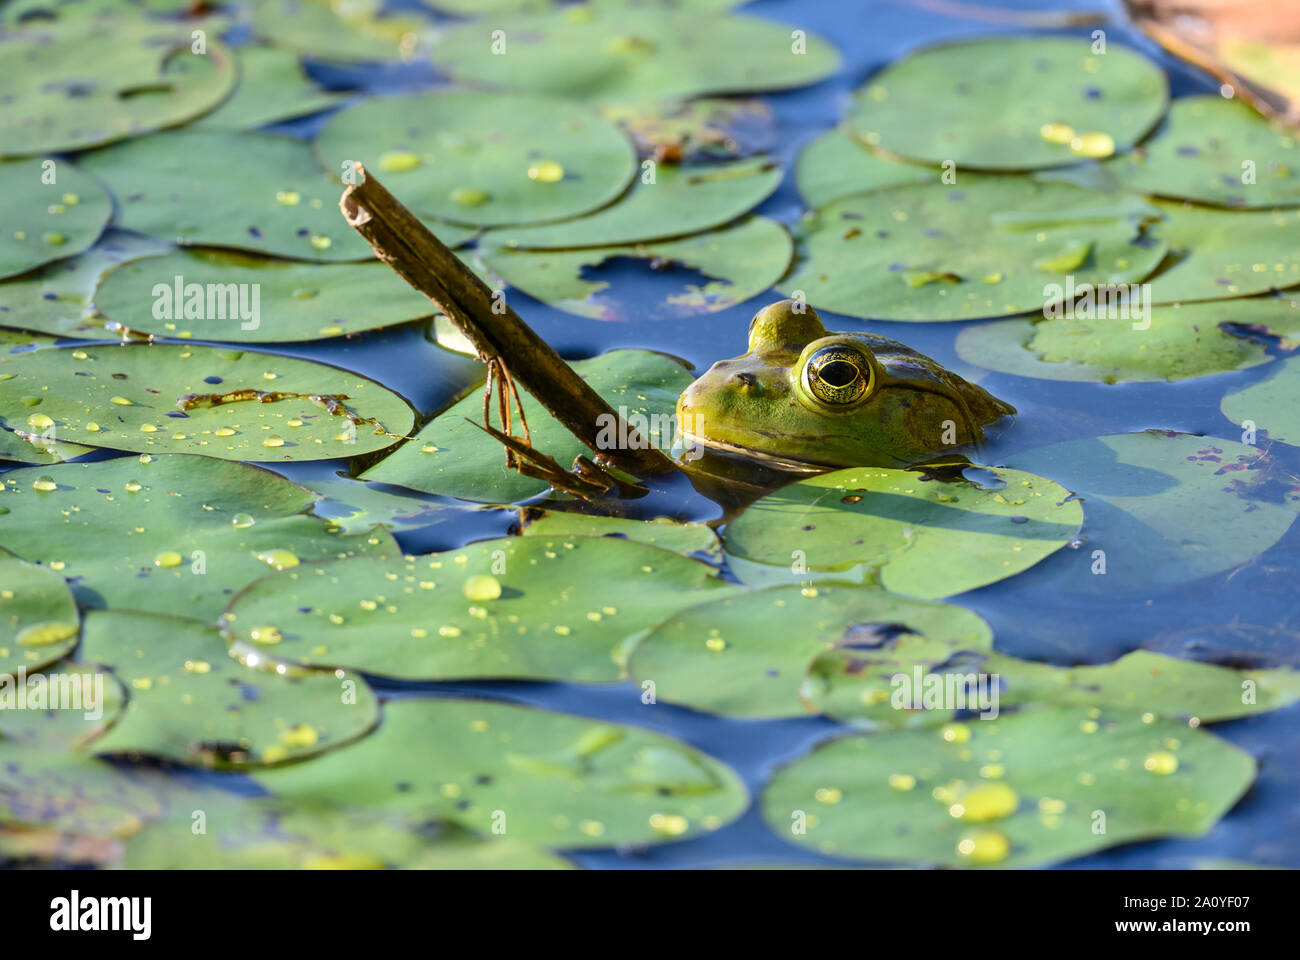 Un American Bullfrog (Lithobates catesbeianus) in un laghetto di gigli. Sheldon lago del Parco statale. Houston, Texas, Stati Uniti d'America. Foto Stock